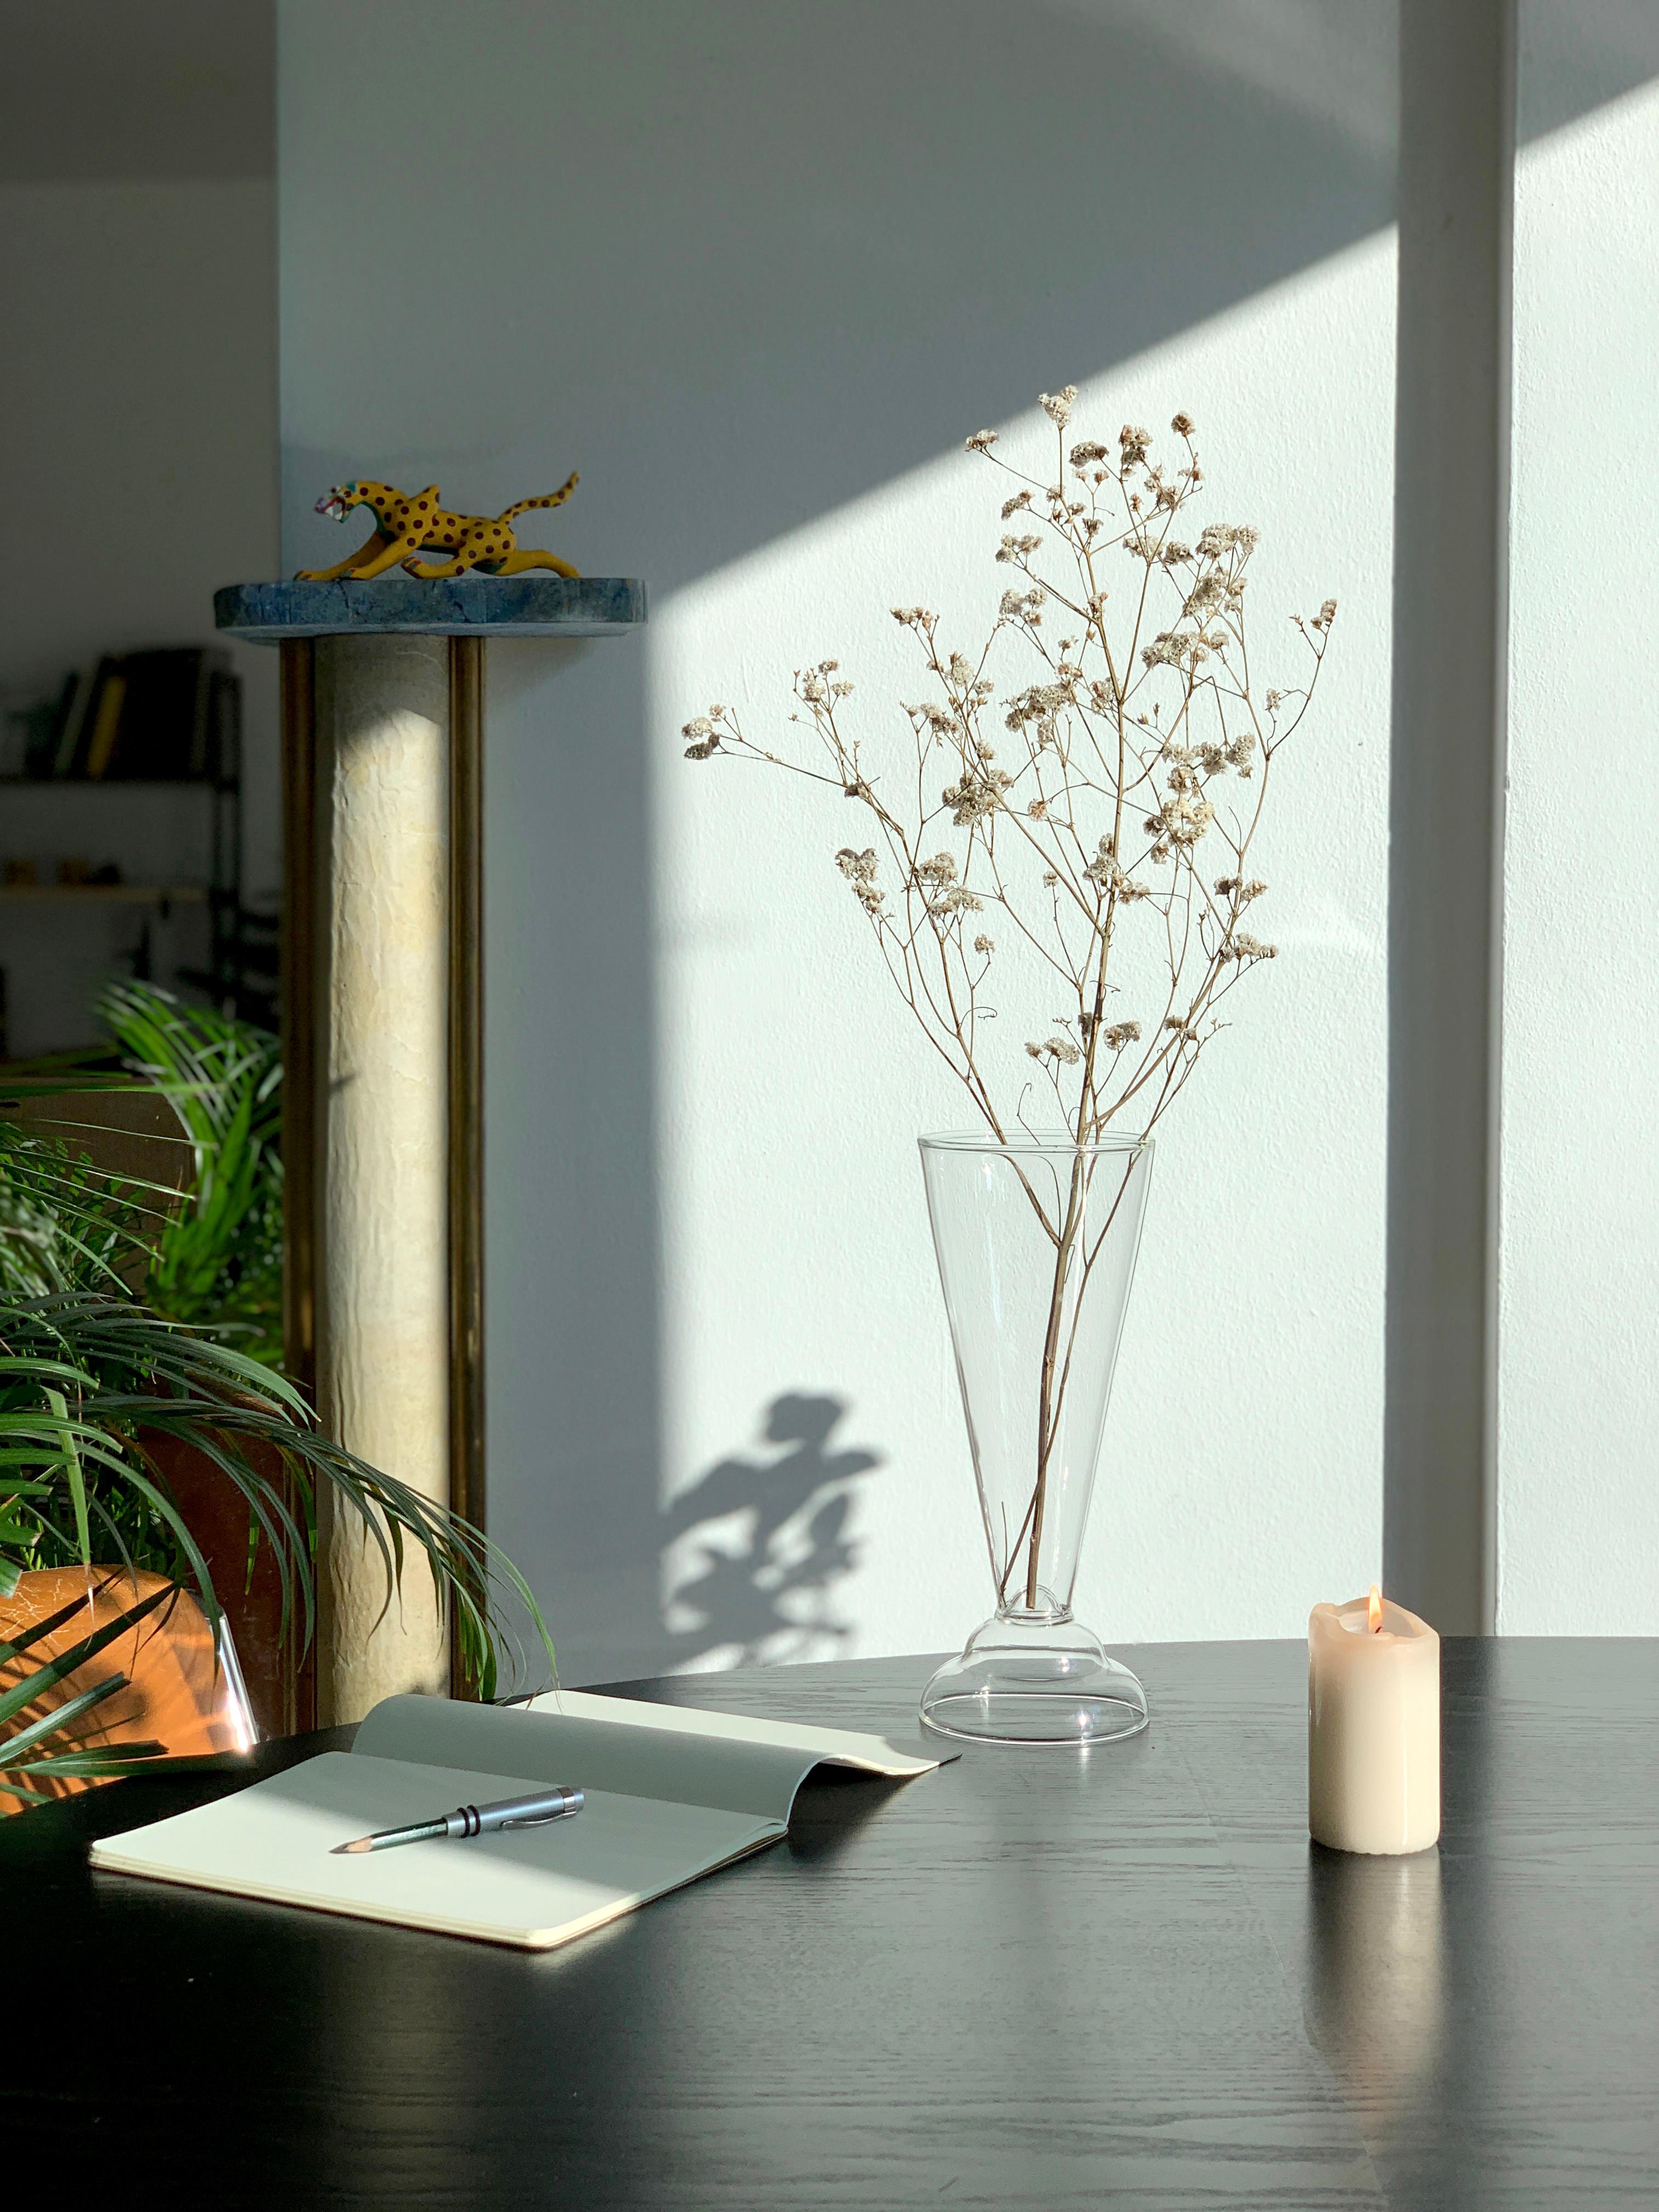 vase en verre contemporain du 21e siècle, fabriqué à la main en Italie par Ilaria Bianchi. Il fait partie de la collection Le Coppe, qui comprend également d'autres beaux verres à vin, à eau, etc.

Le vase Le Coppe est magistralement soufflé à la